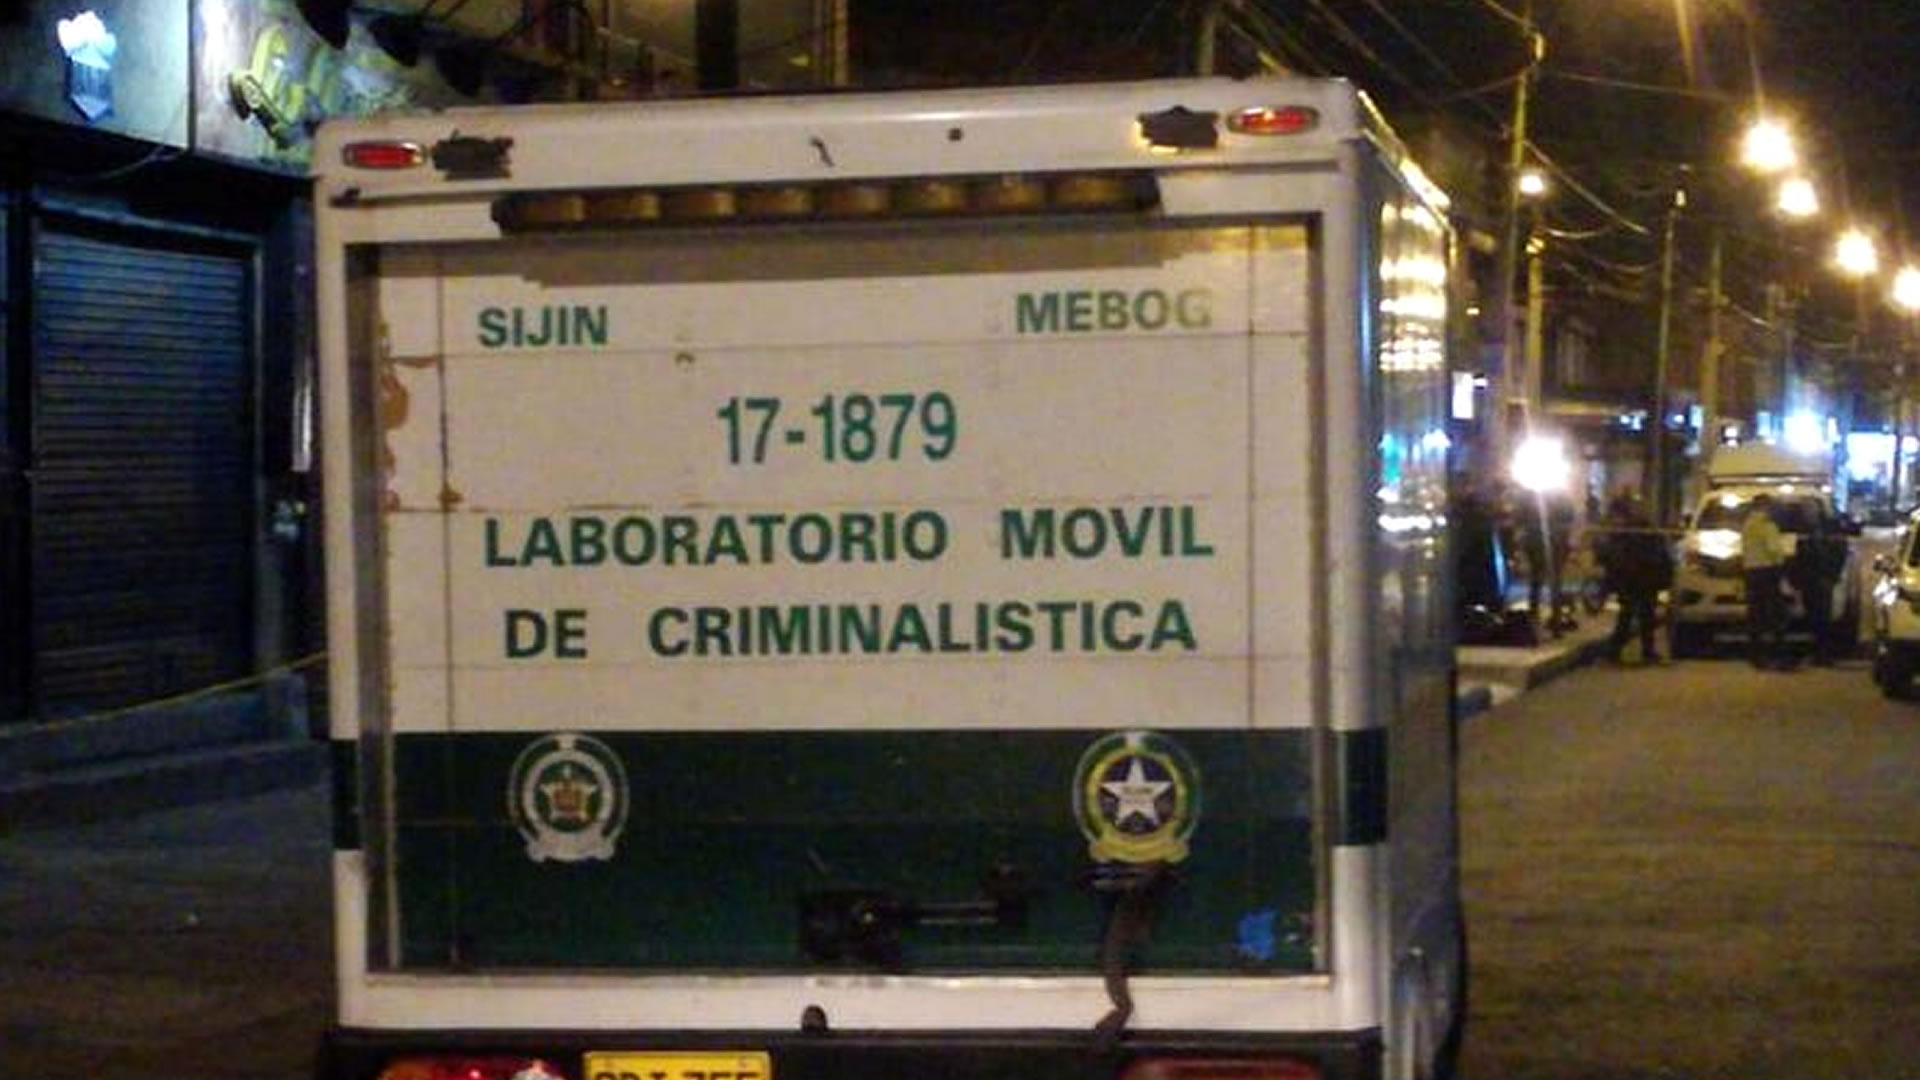 Vehículo de criminalistica en Bogotá. Imagen de referencia.